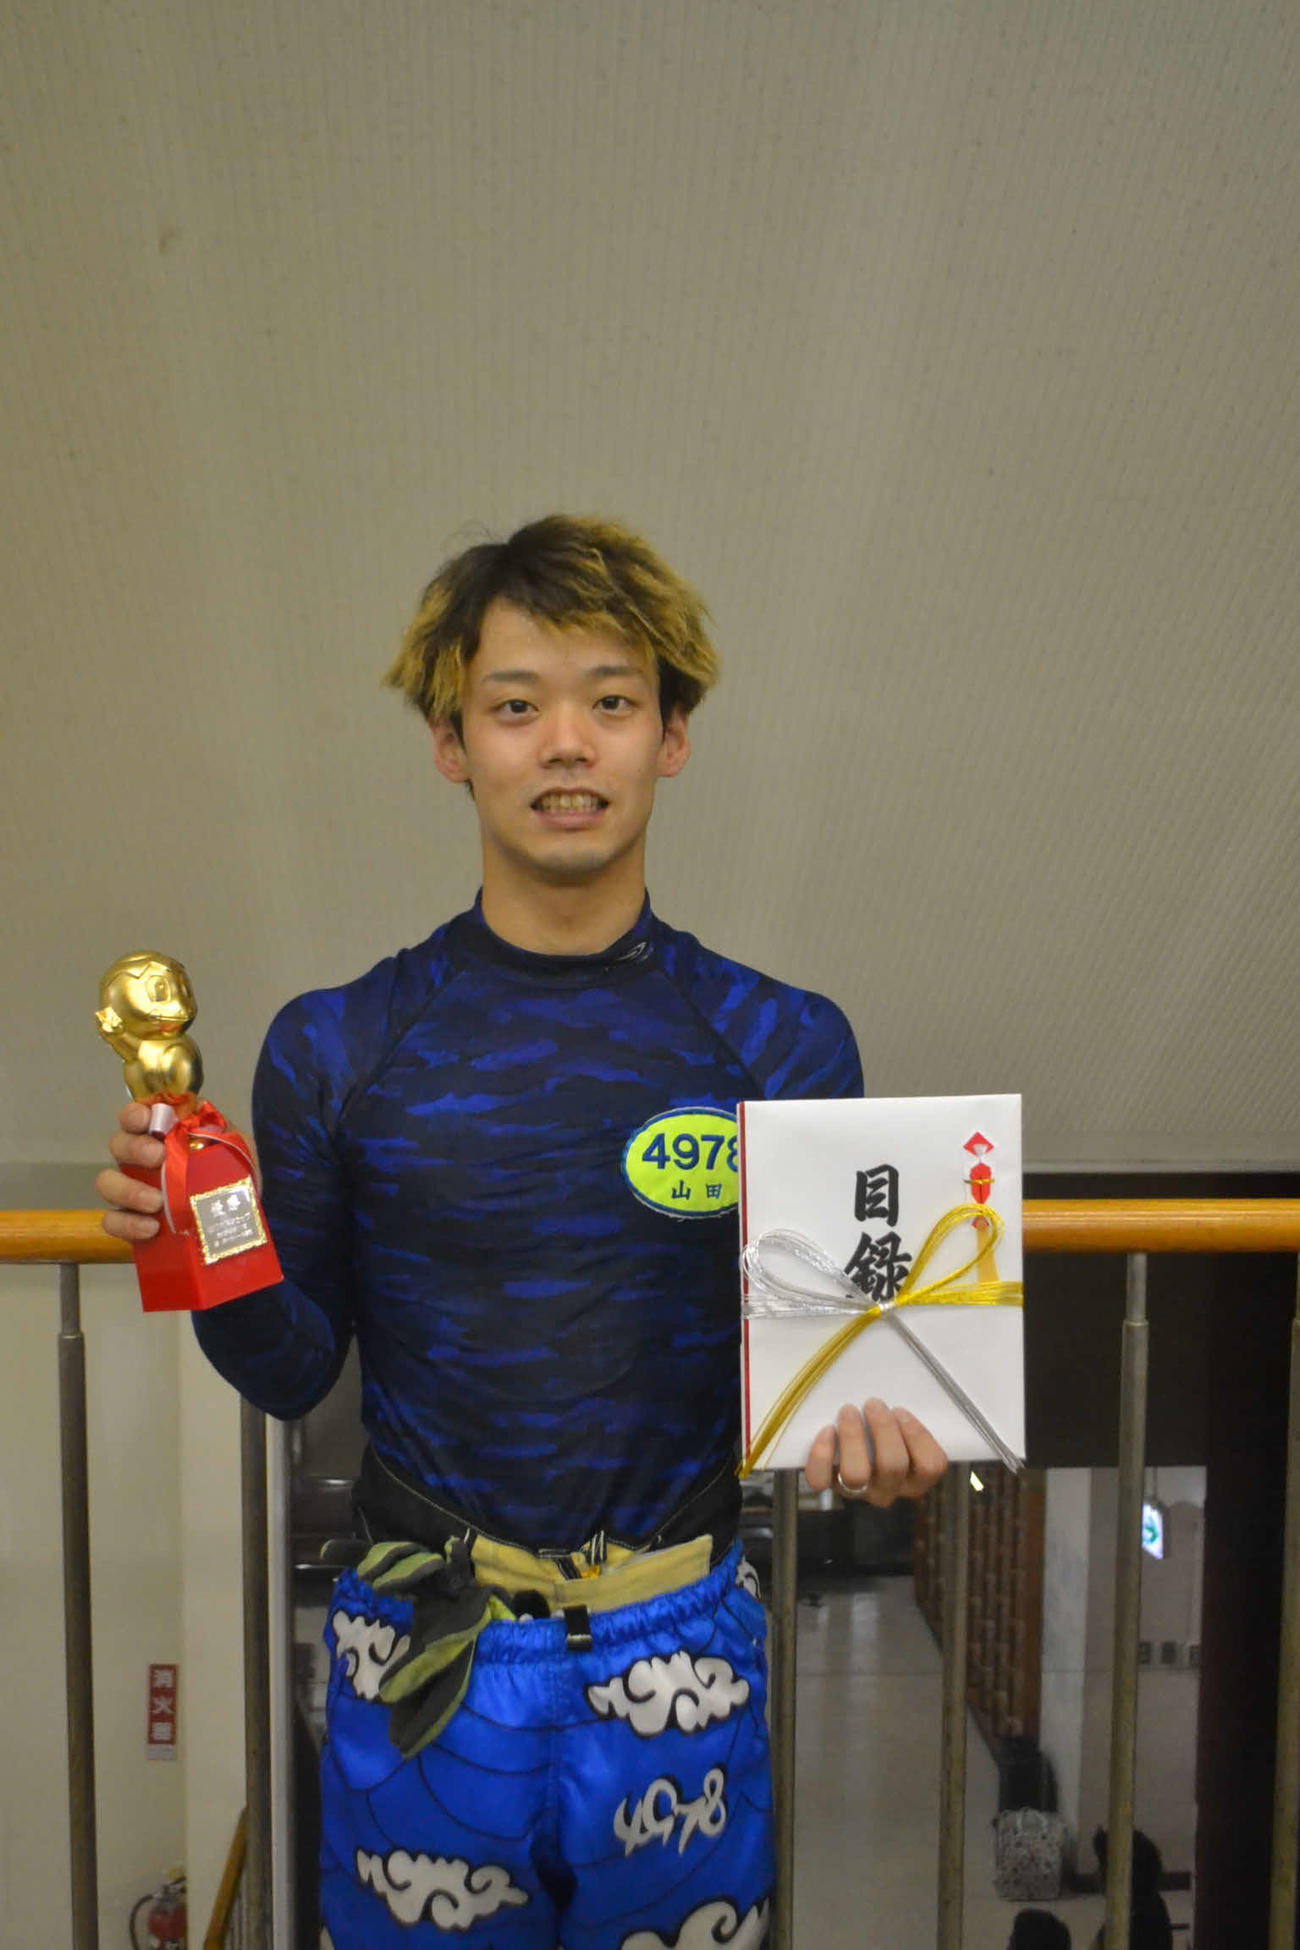 デビュー4年目で初優勝を飾った山田和佐は、トロフィーと目録を手に笑顔を見せた